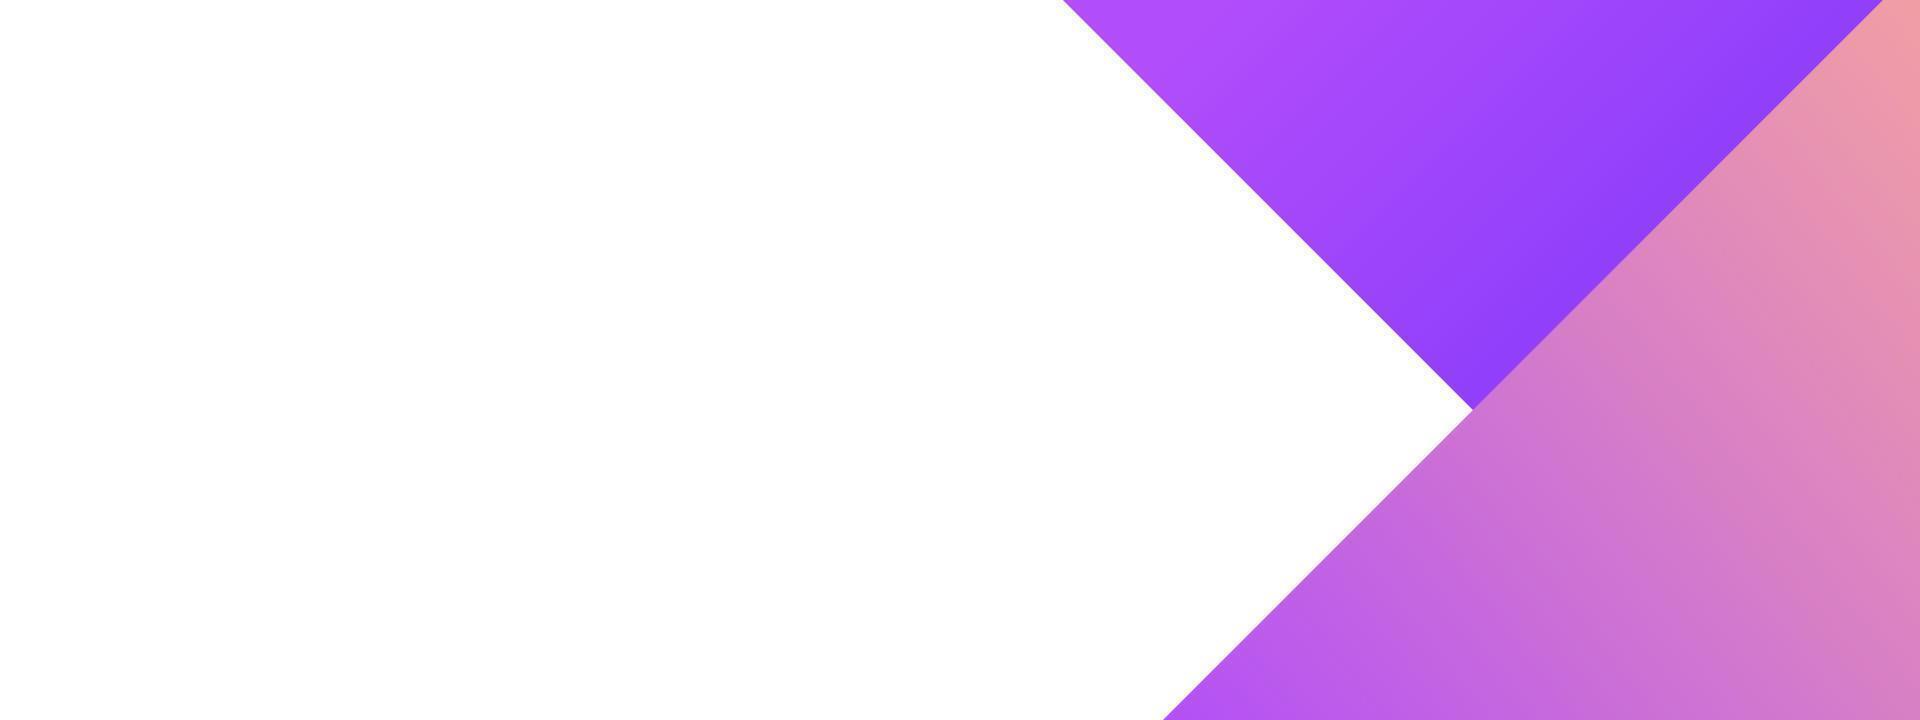 modern purple background design vector